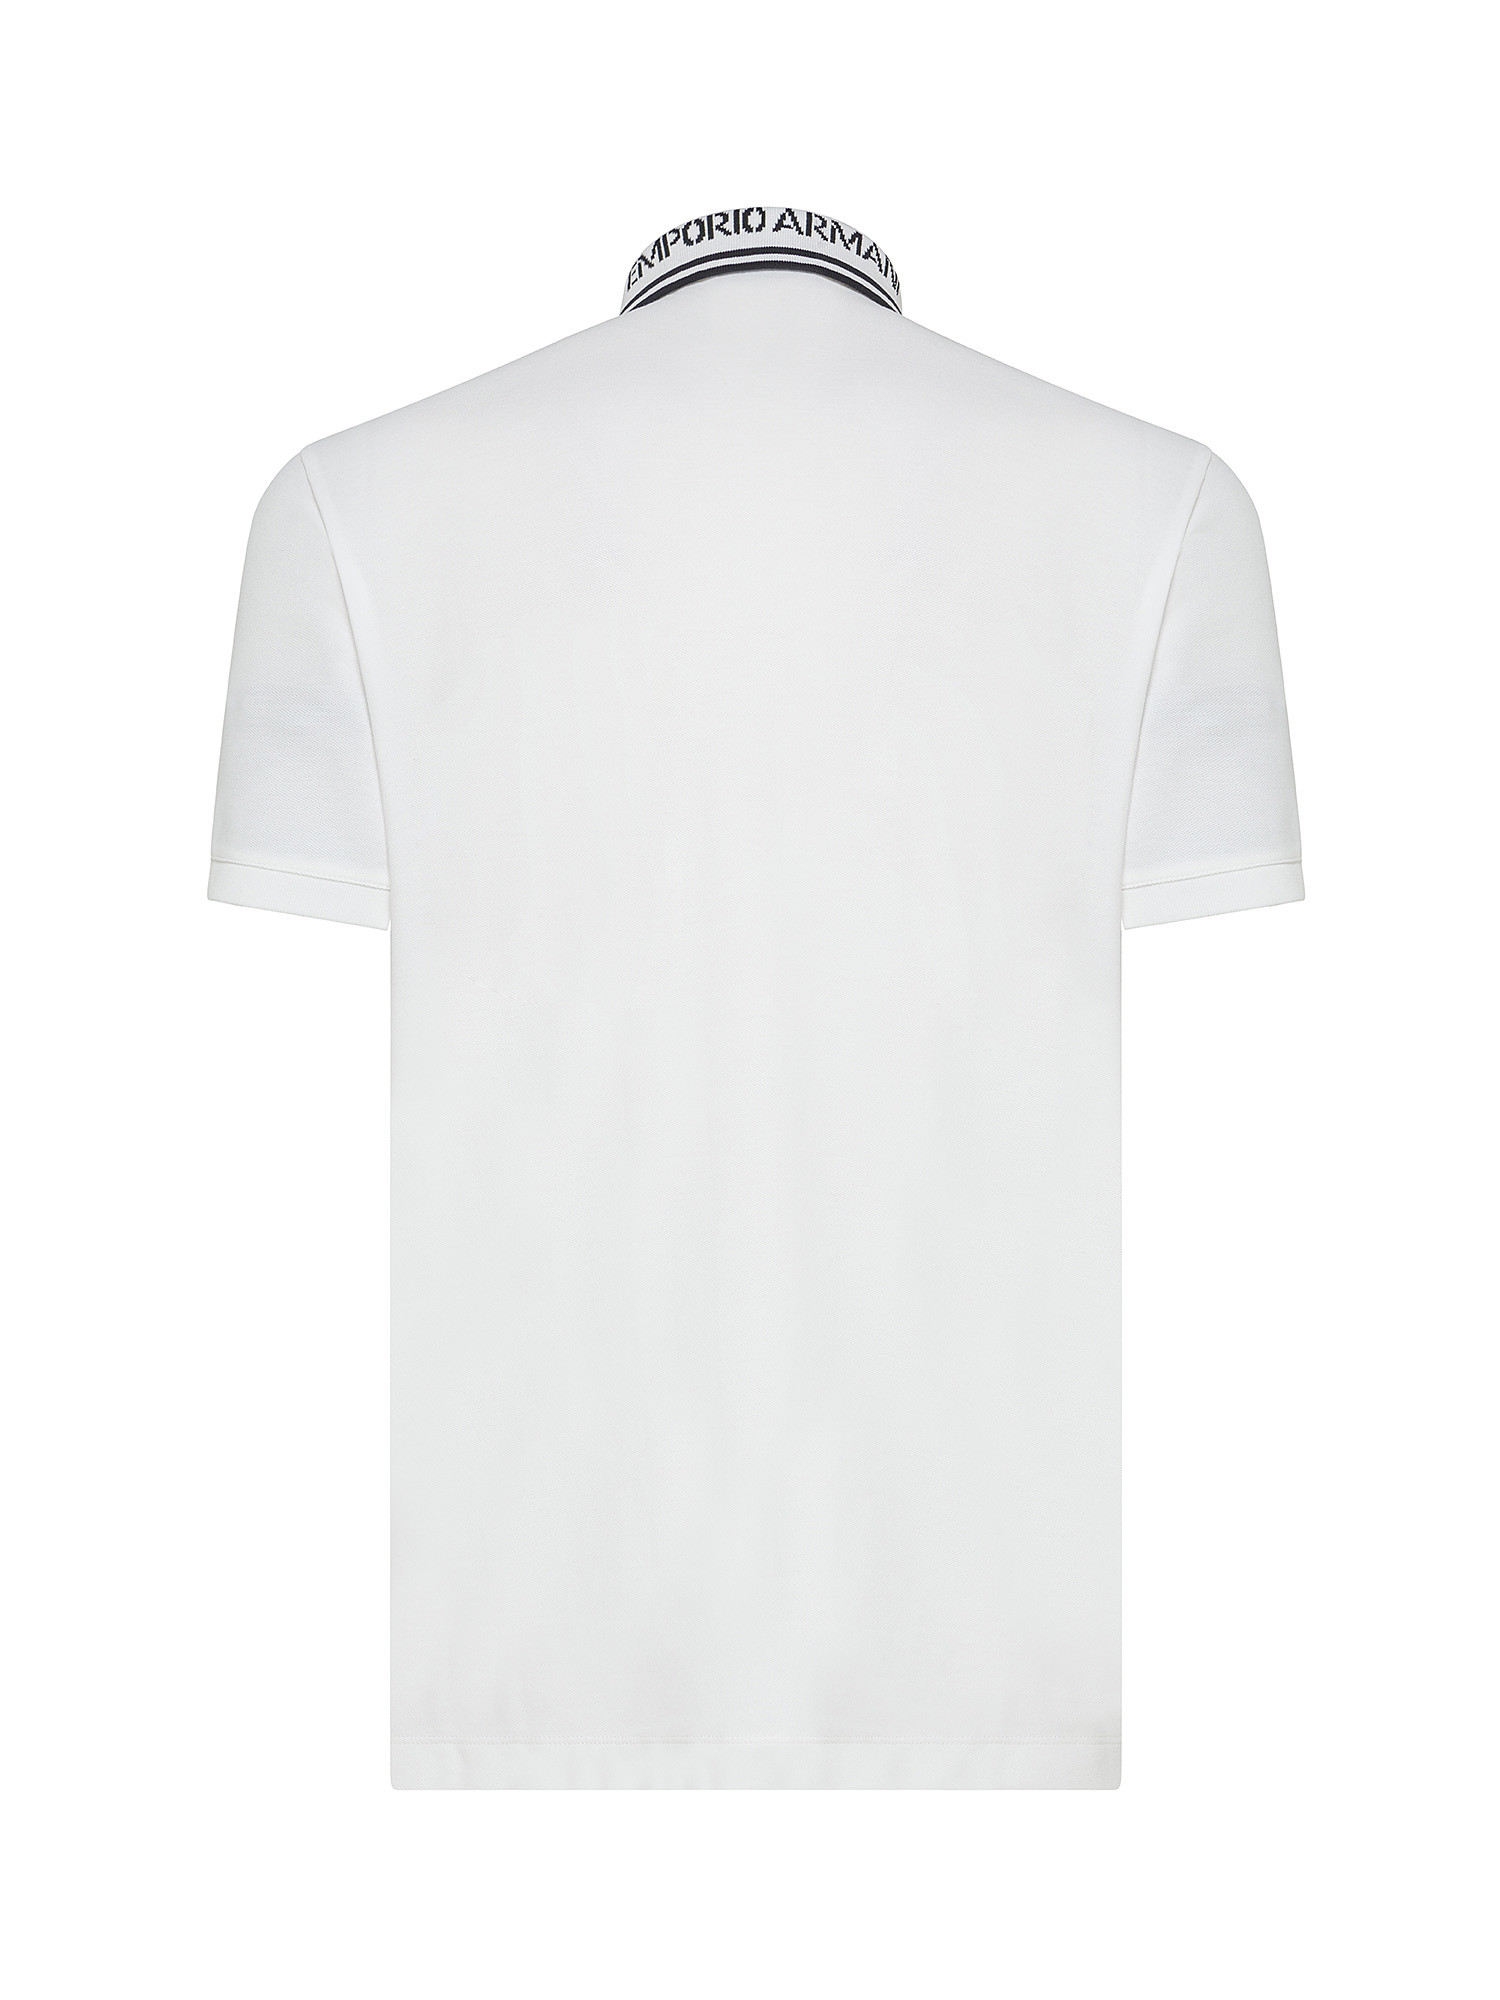 Emporio Armani - Polo in cotone con logo ricamato, Bianco, large image number 1